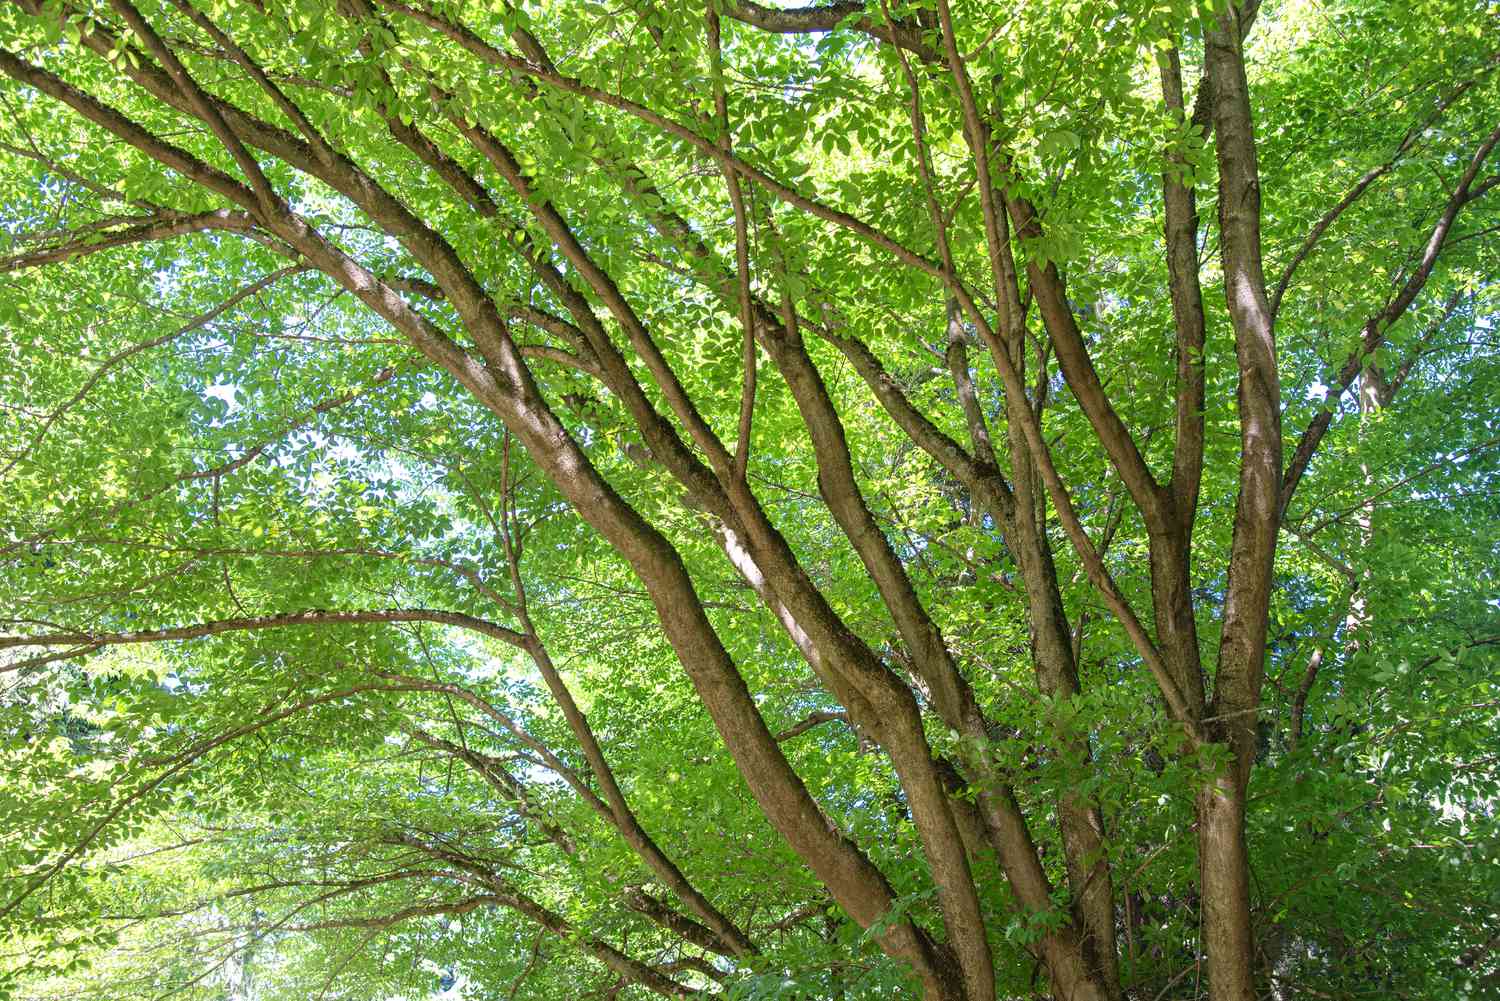 Troncos de arce de hoja de vid que se extienden en ramas extendidas con hojas verdes brillantes